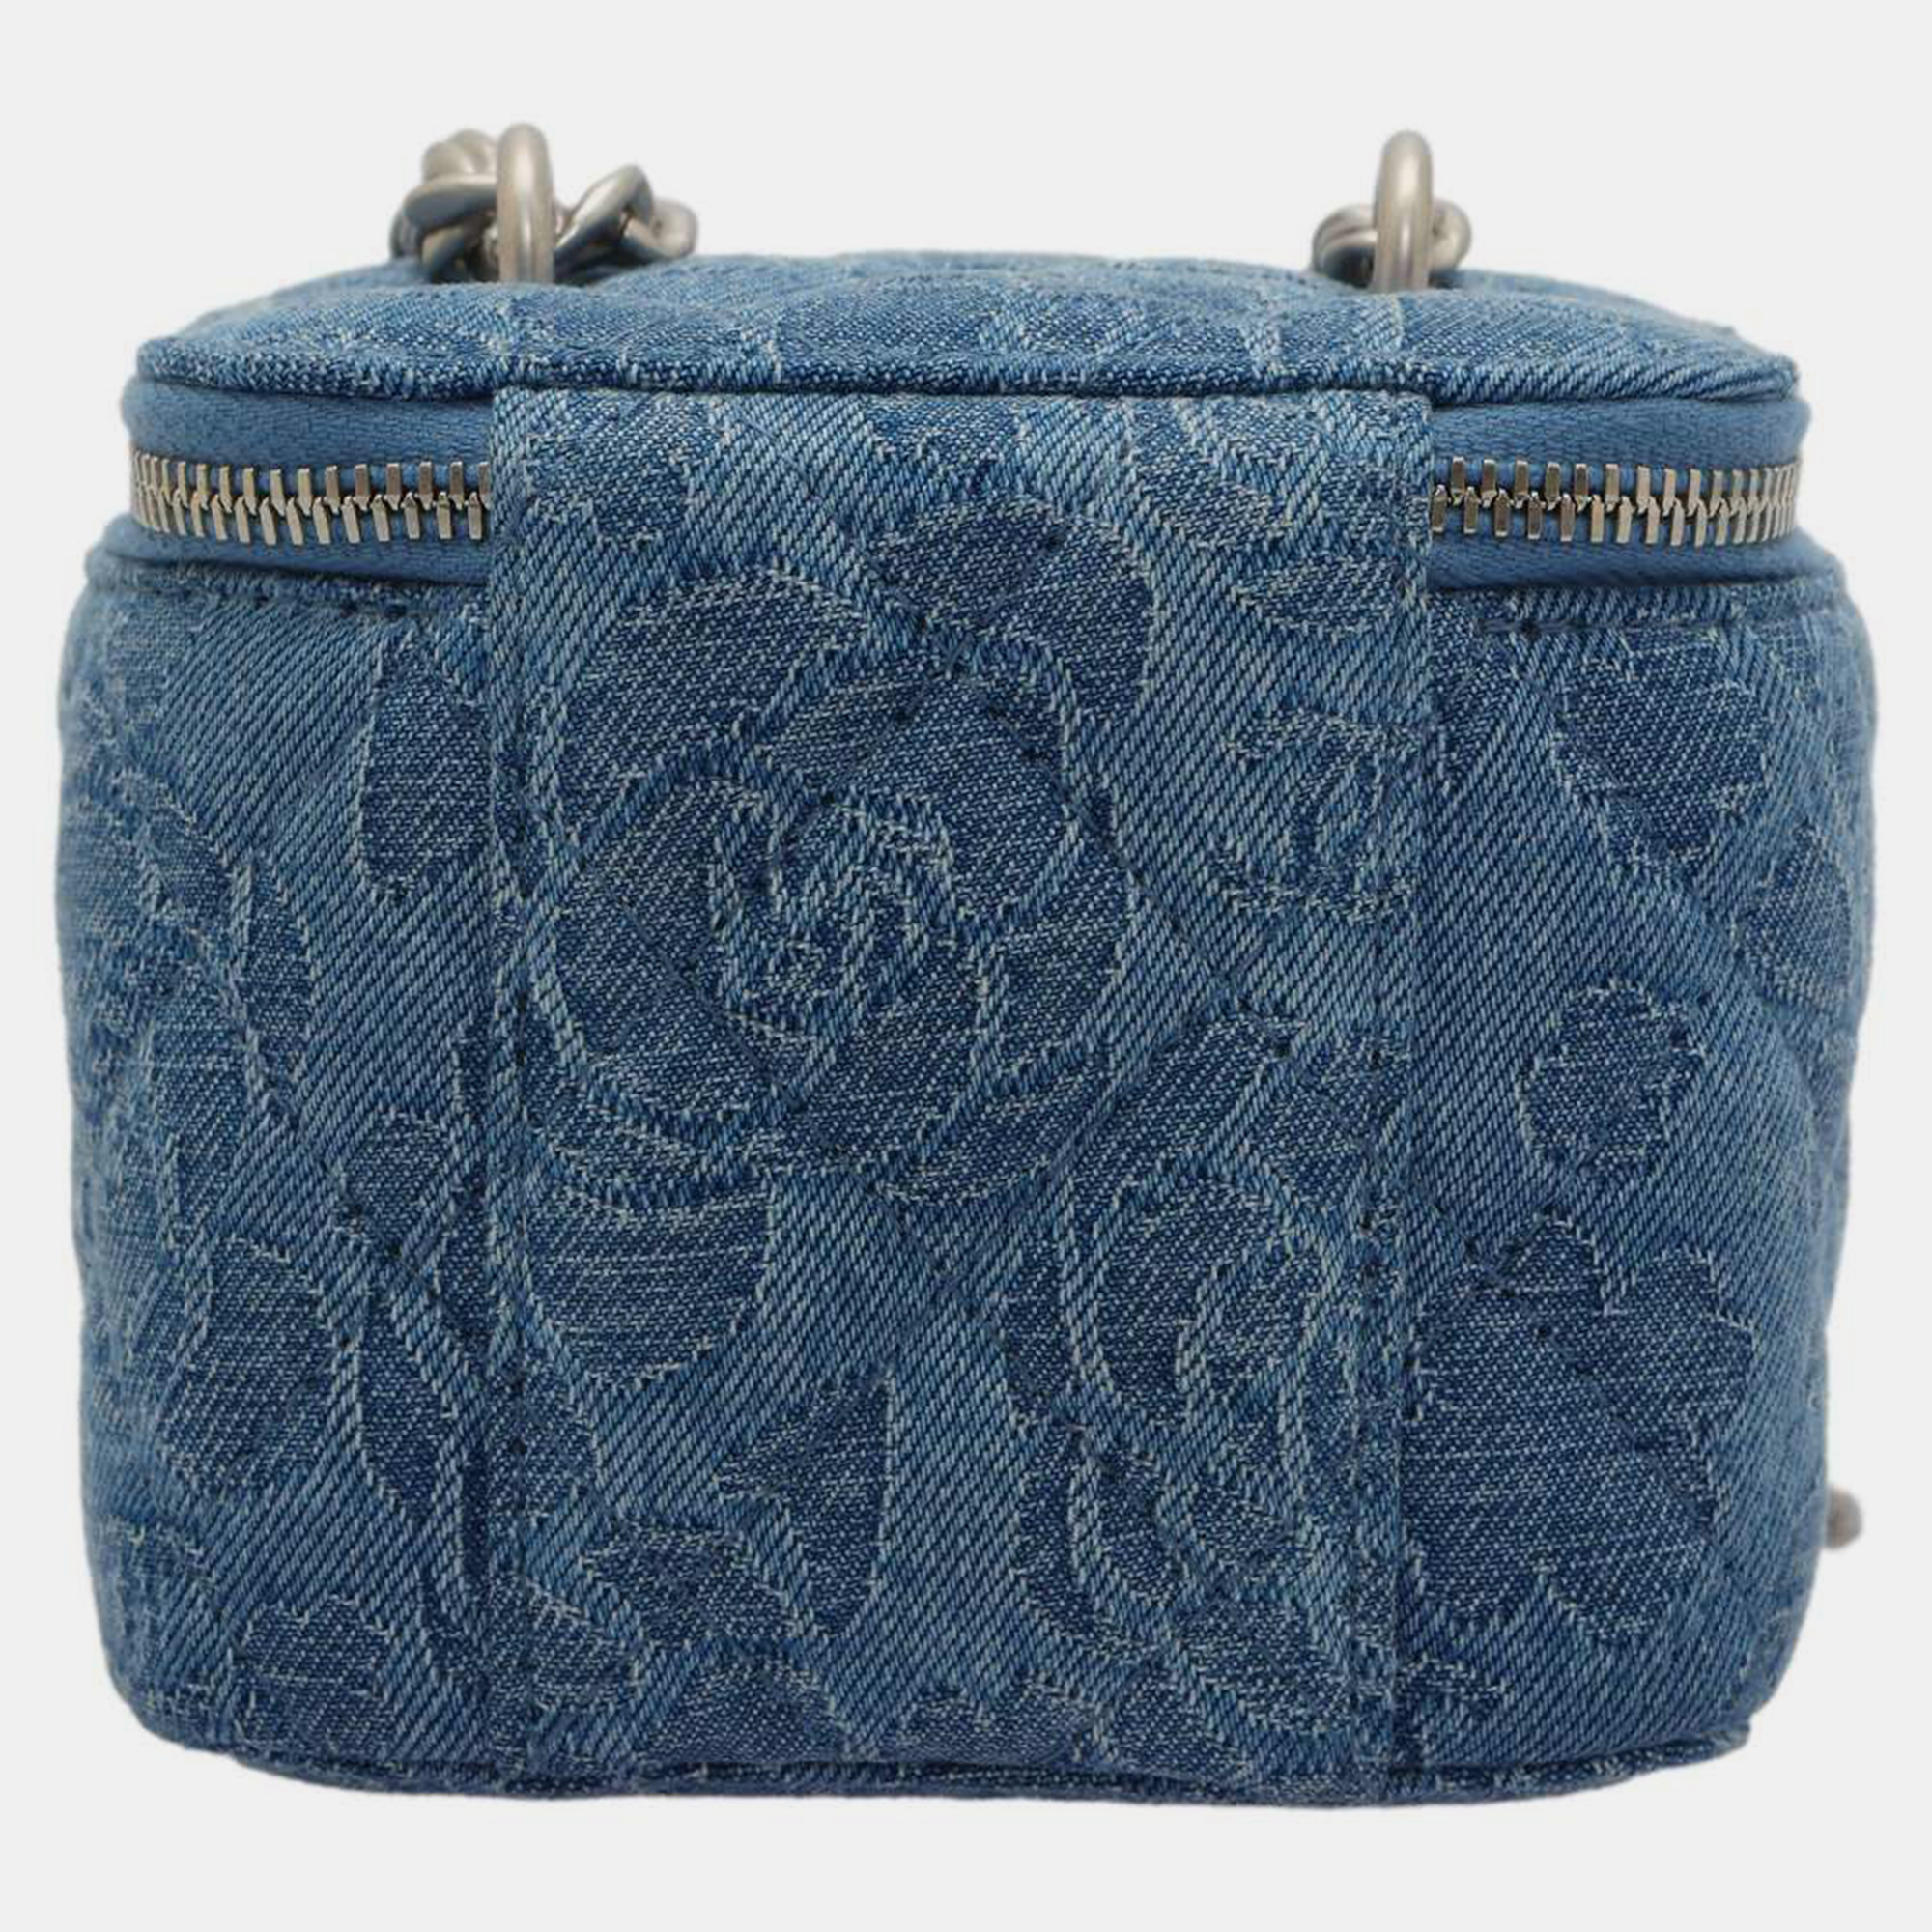 Chanel Blue Denim Camellia Vanity Shoulder Bag